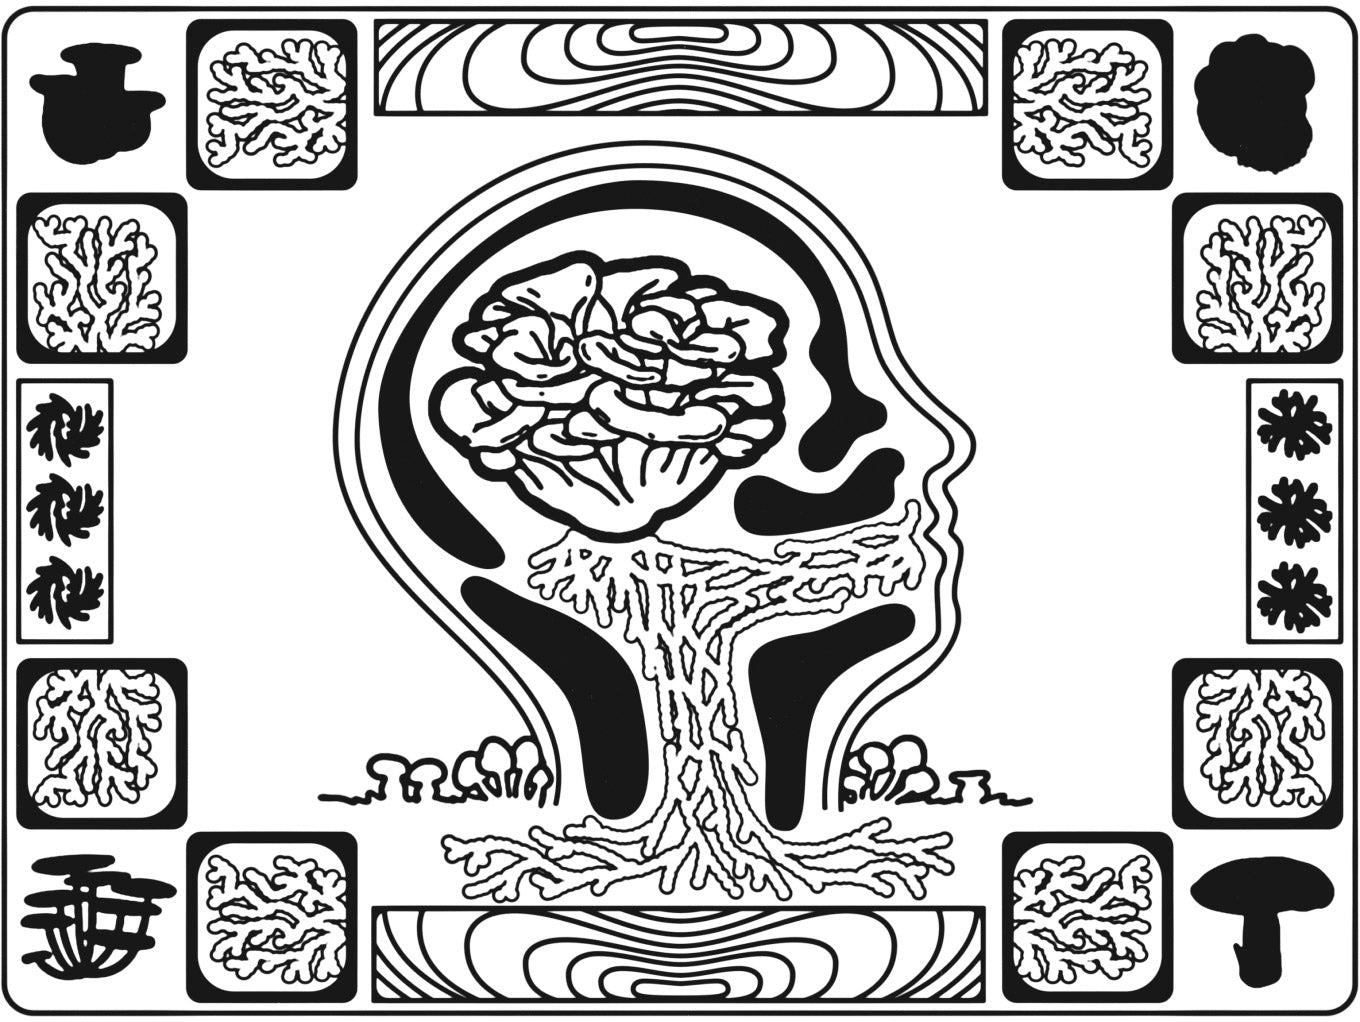 Mushroom brain illustration